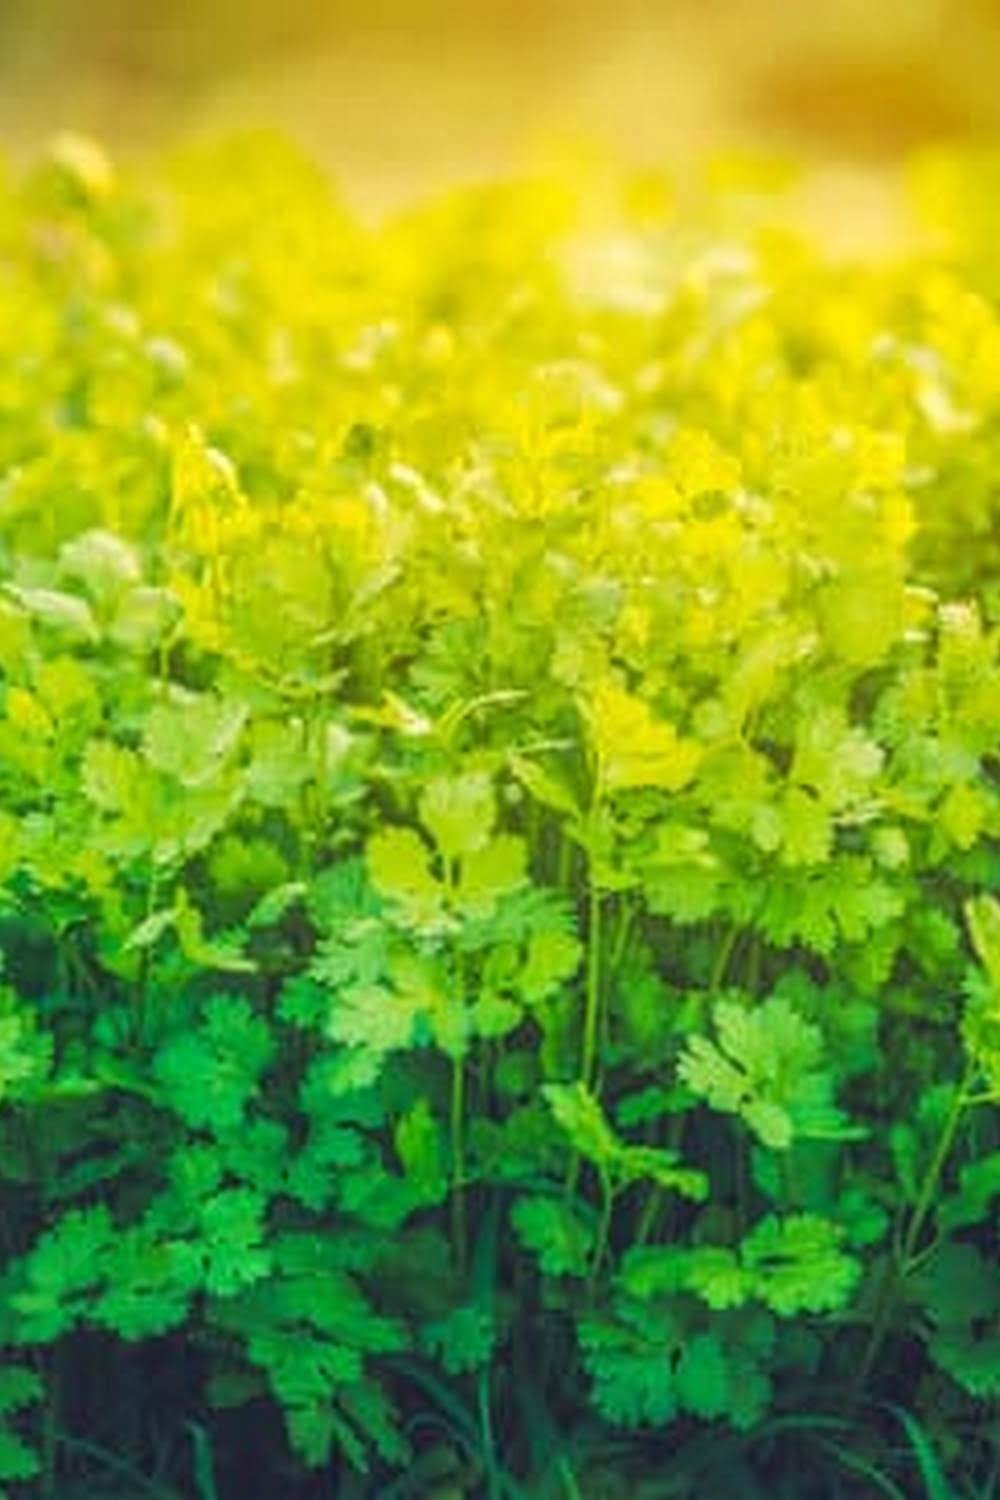 Best Soil To Use For Organic Vegetable Garden